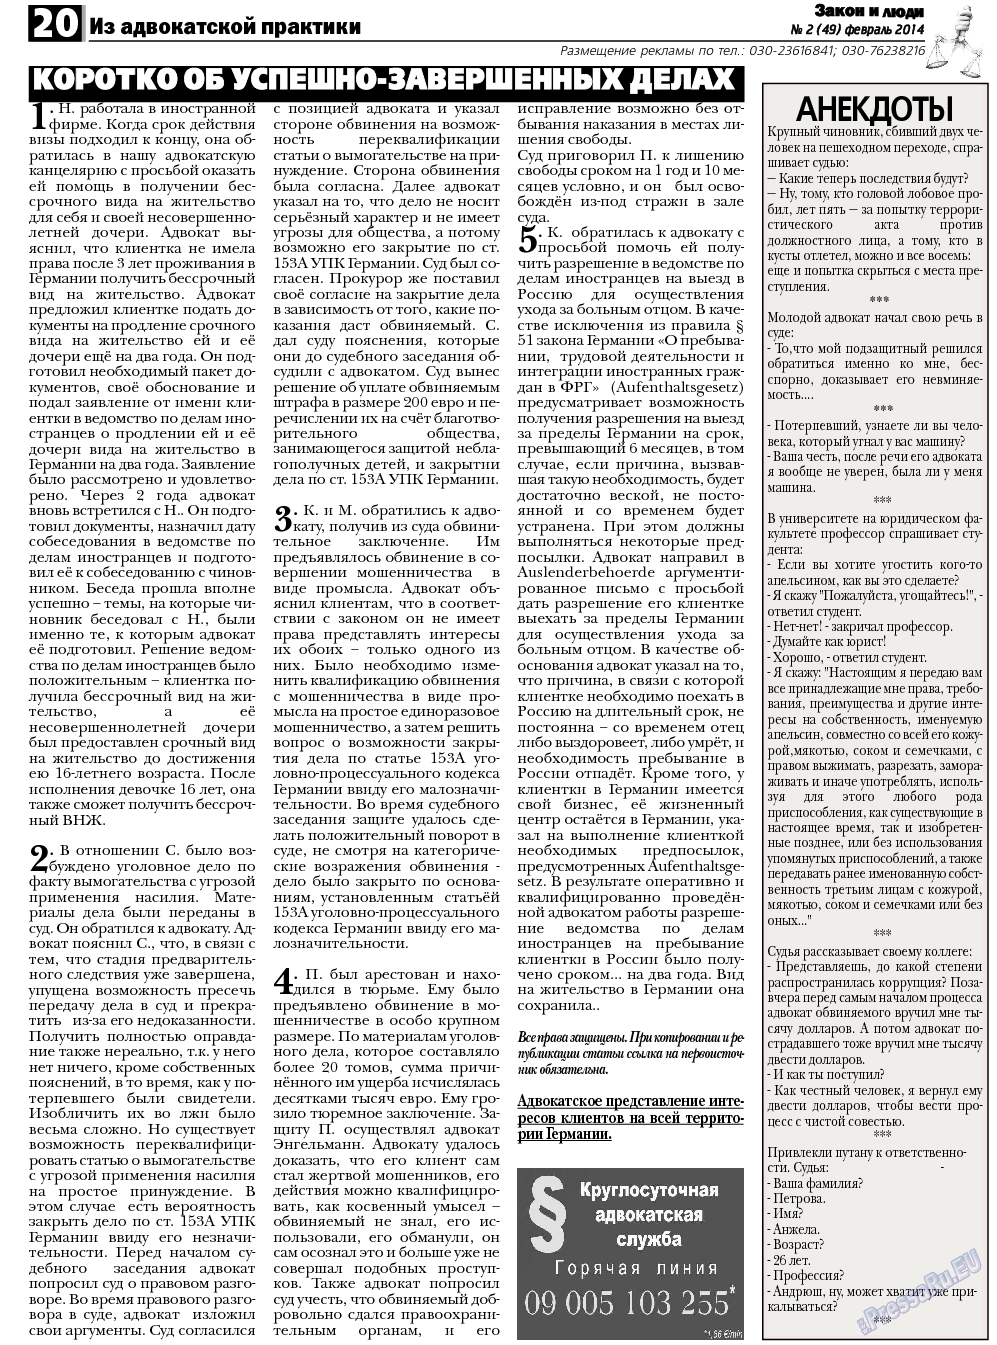 Закон и люди (газета). 2014 год, номер 2, стр. 20